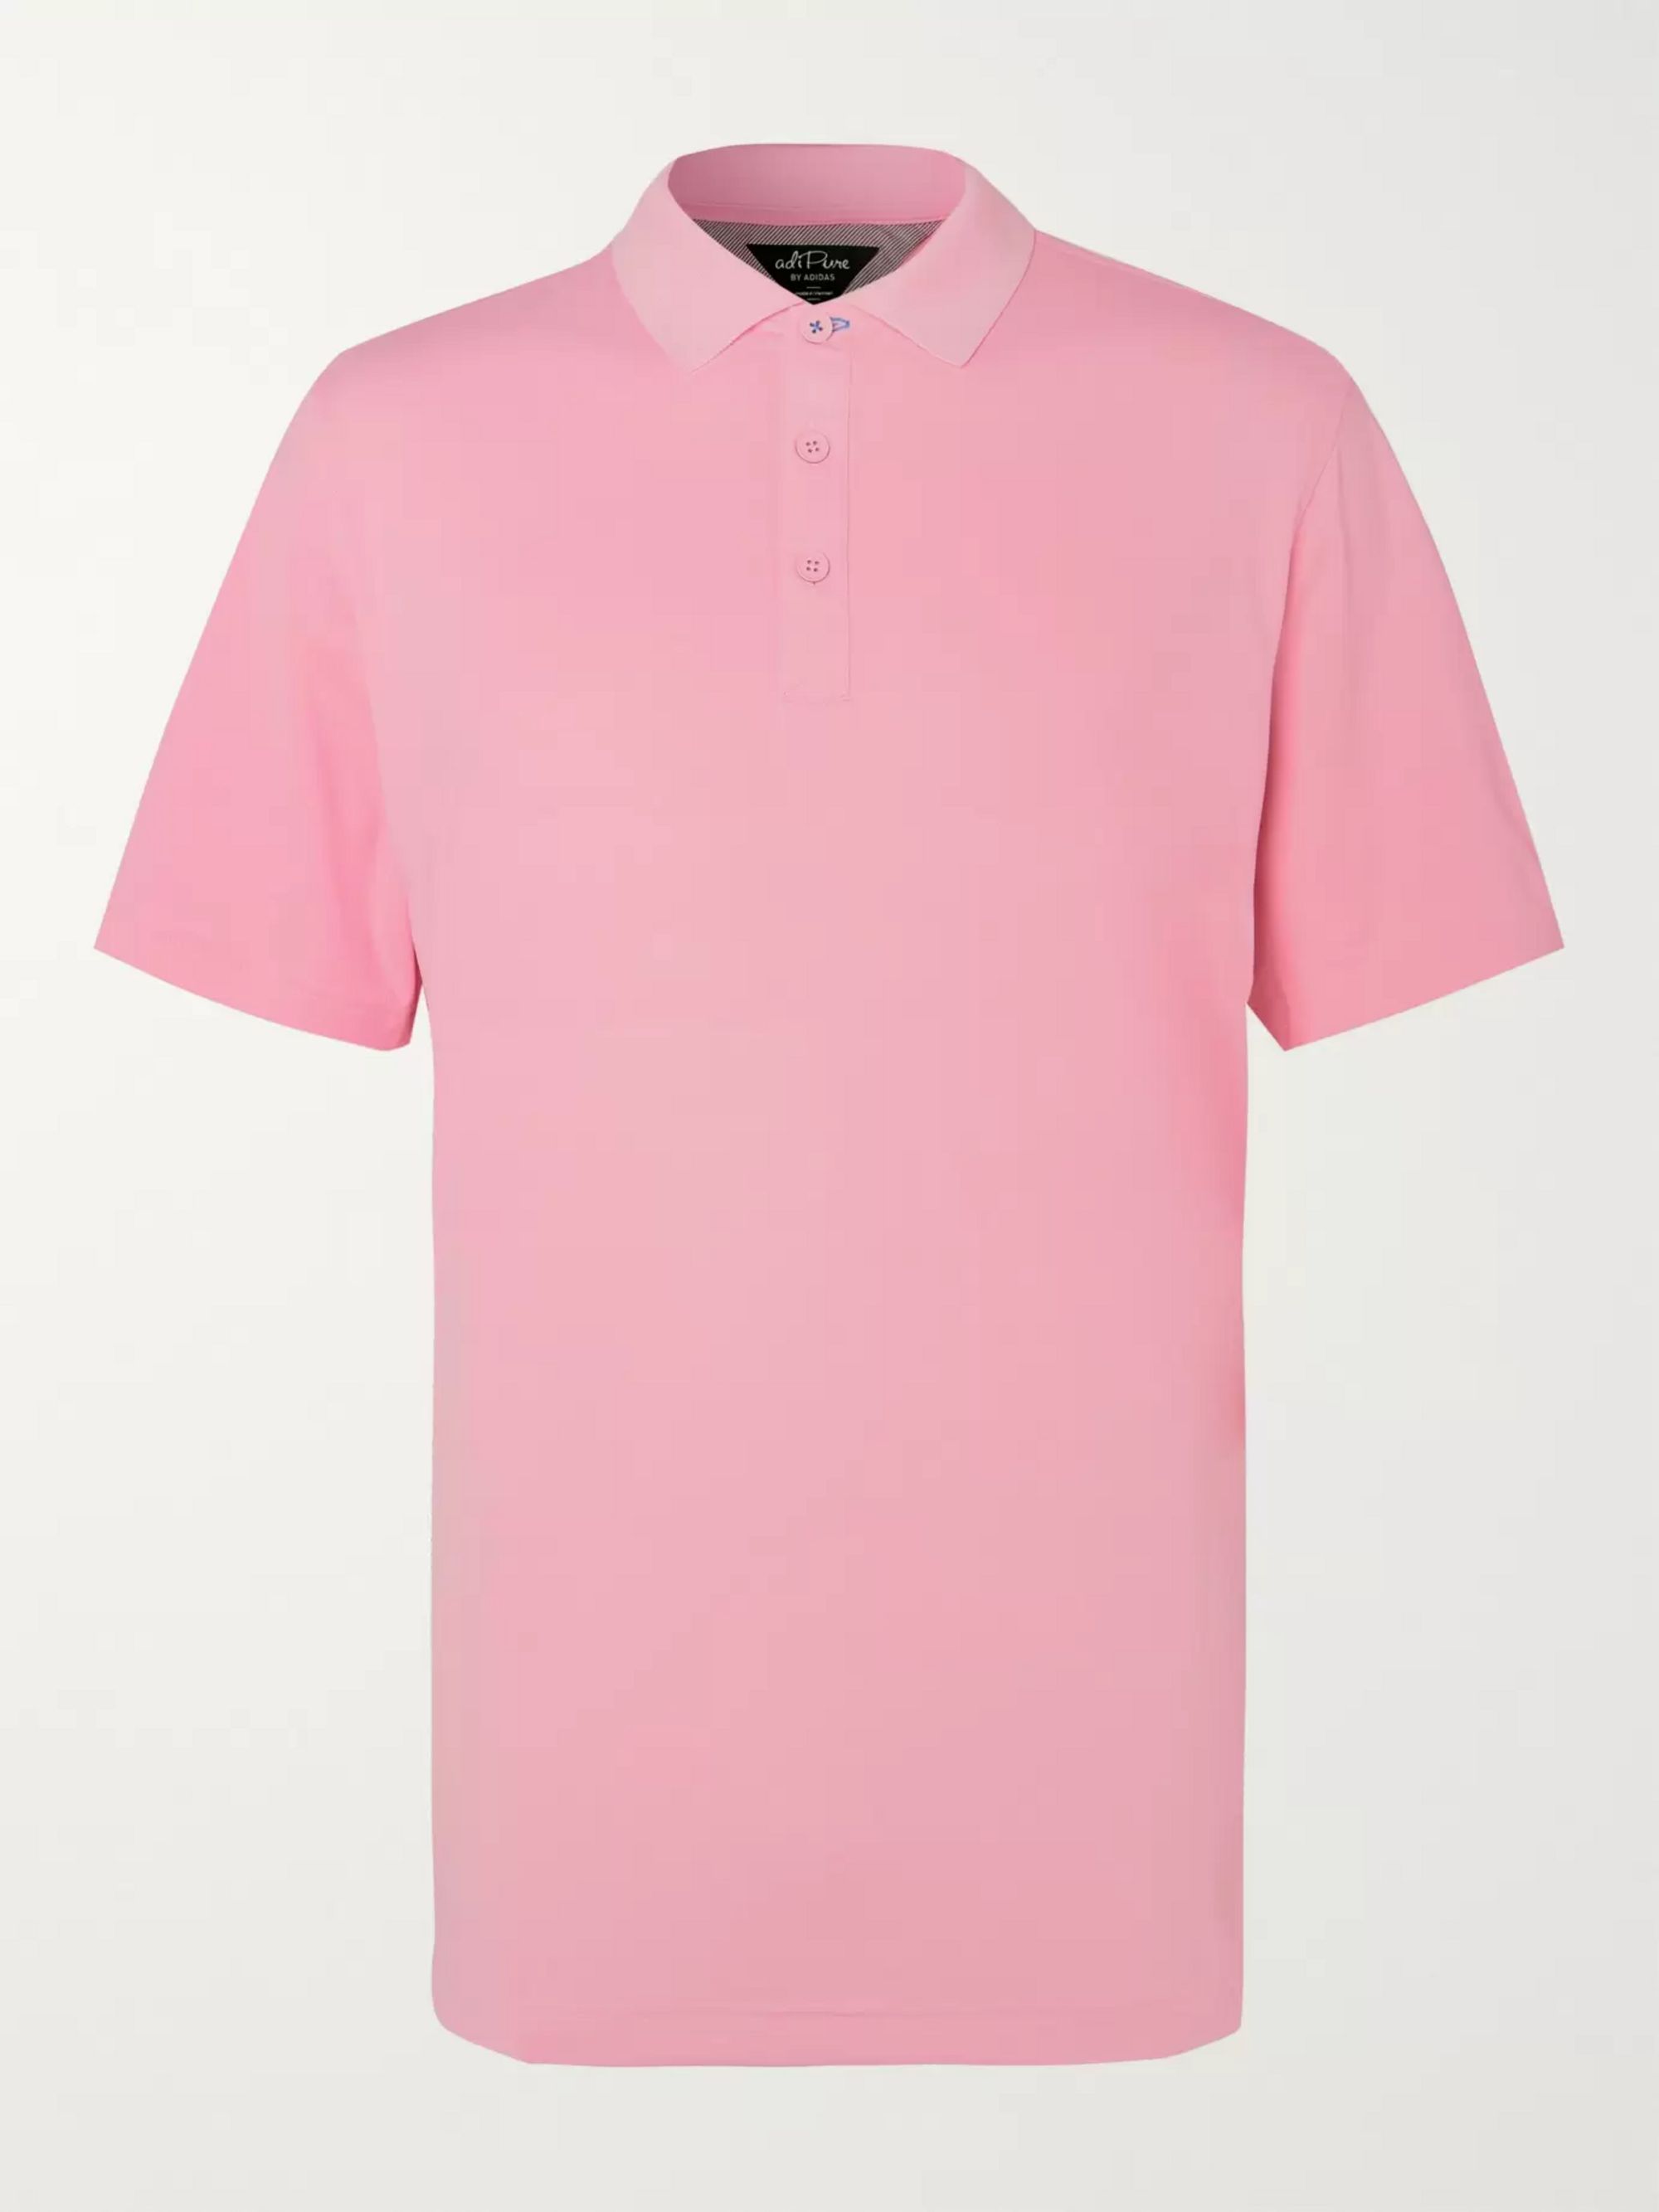 adipure golf clothing